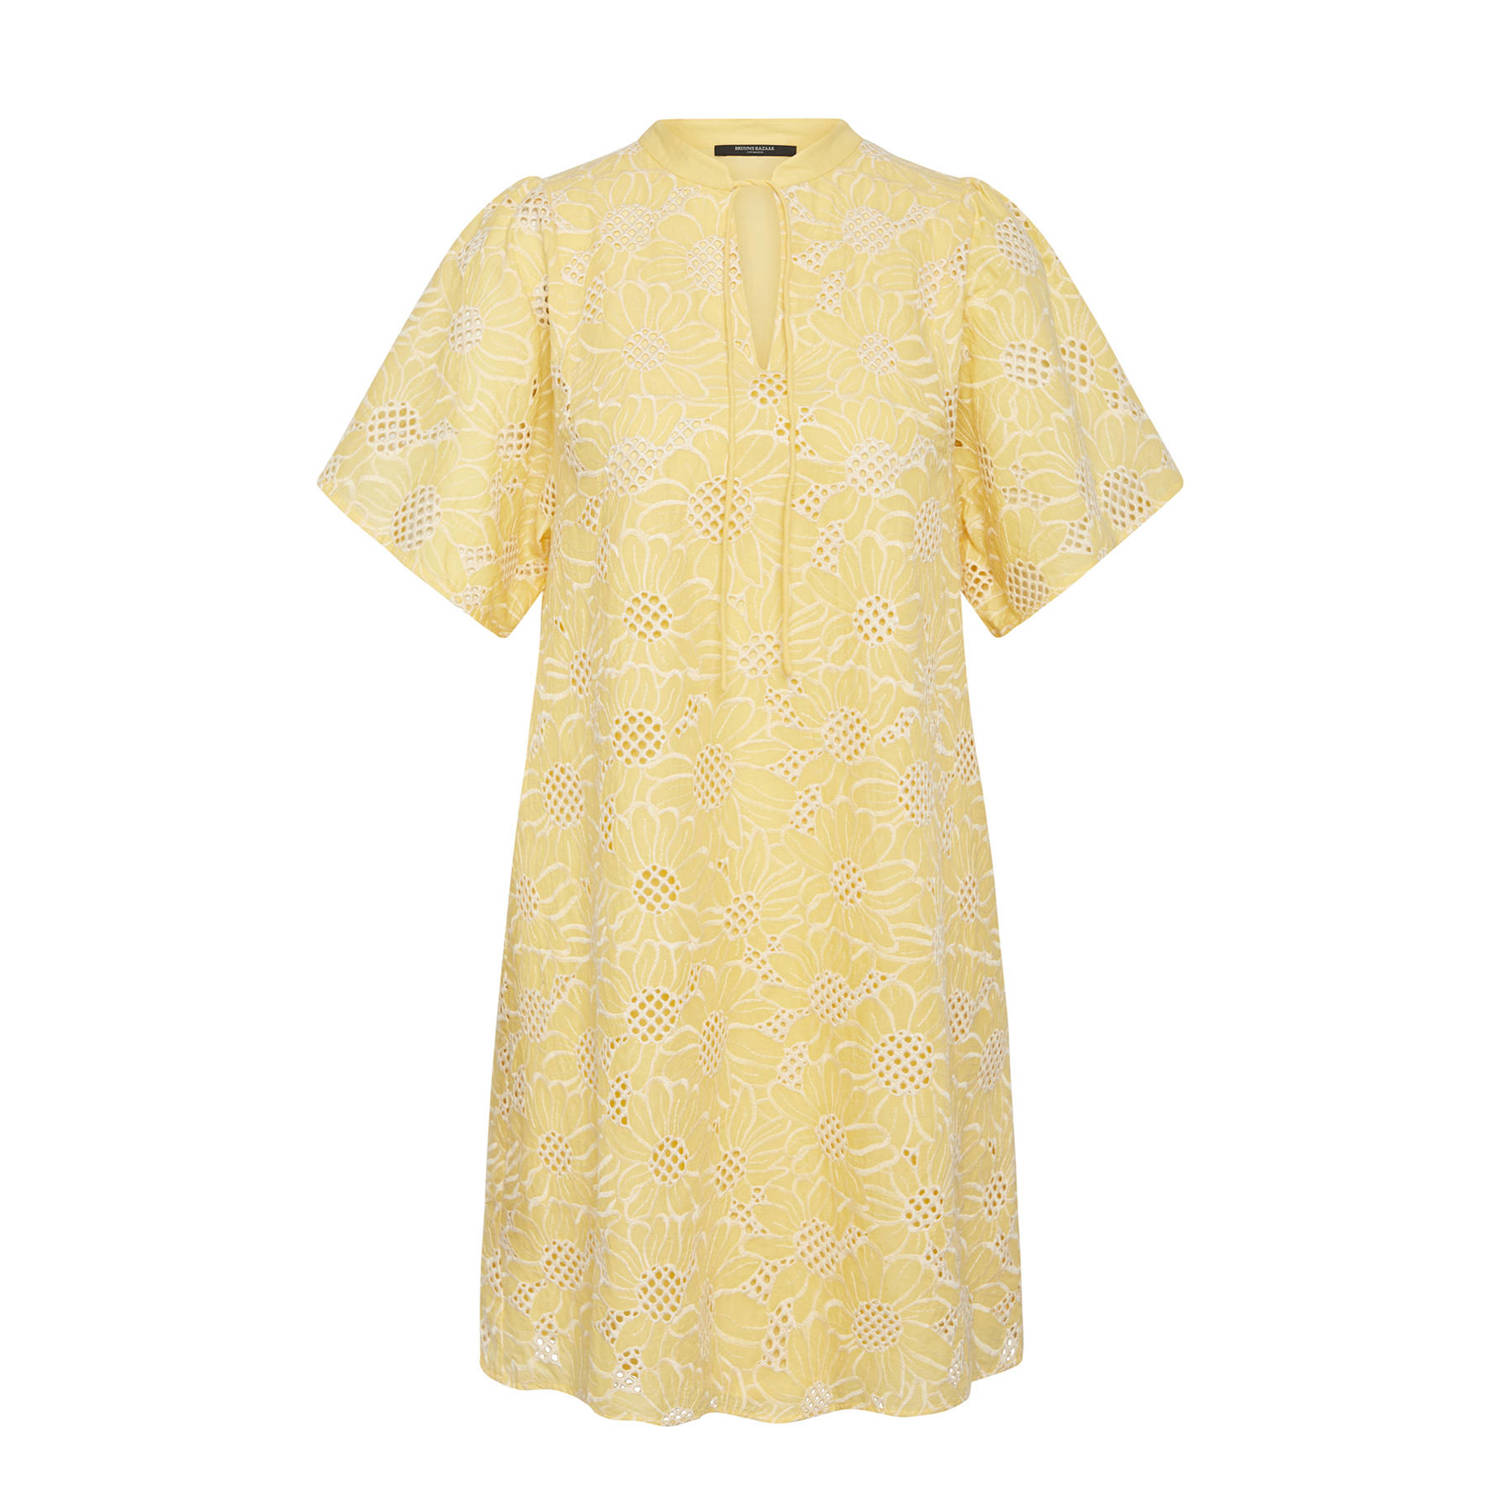 Bruuns Bazaar gebloemde jurk geel wit